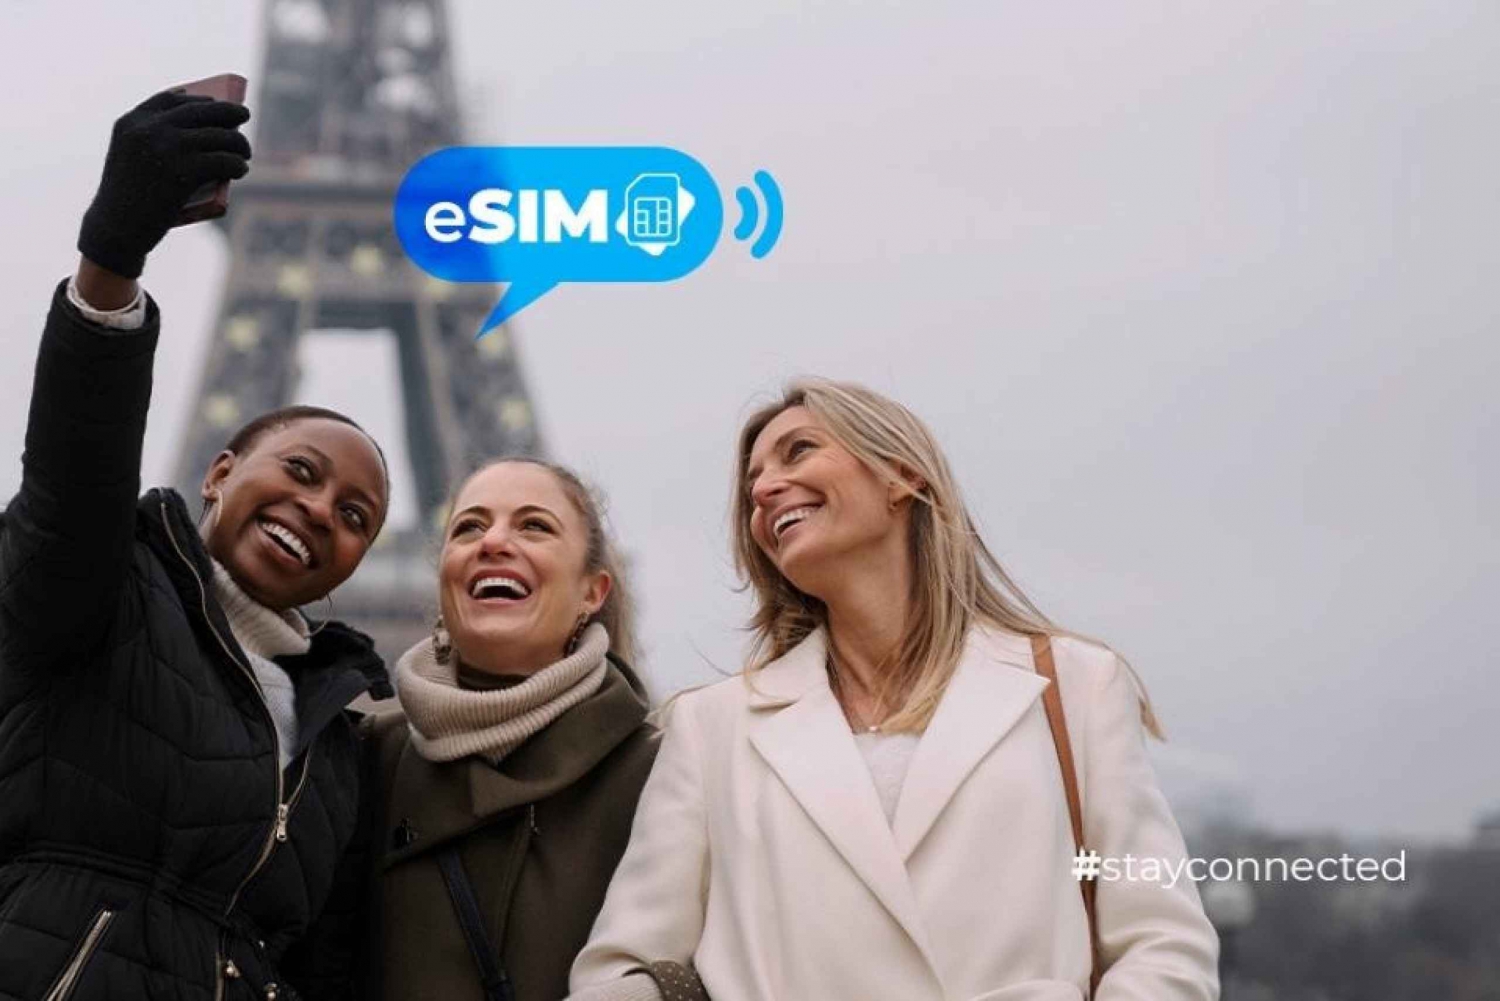 Nizza ja Ranska: eSIM-mobiilidatan avulla rajoittamaton EU-internet